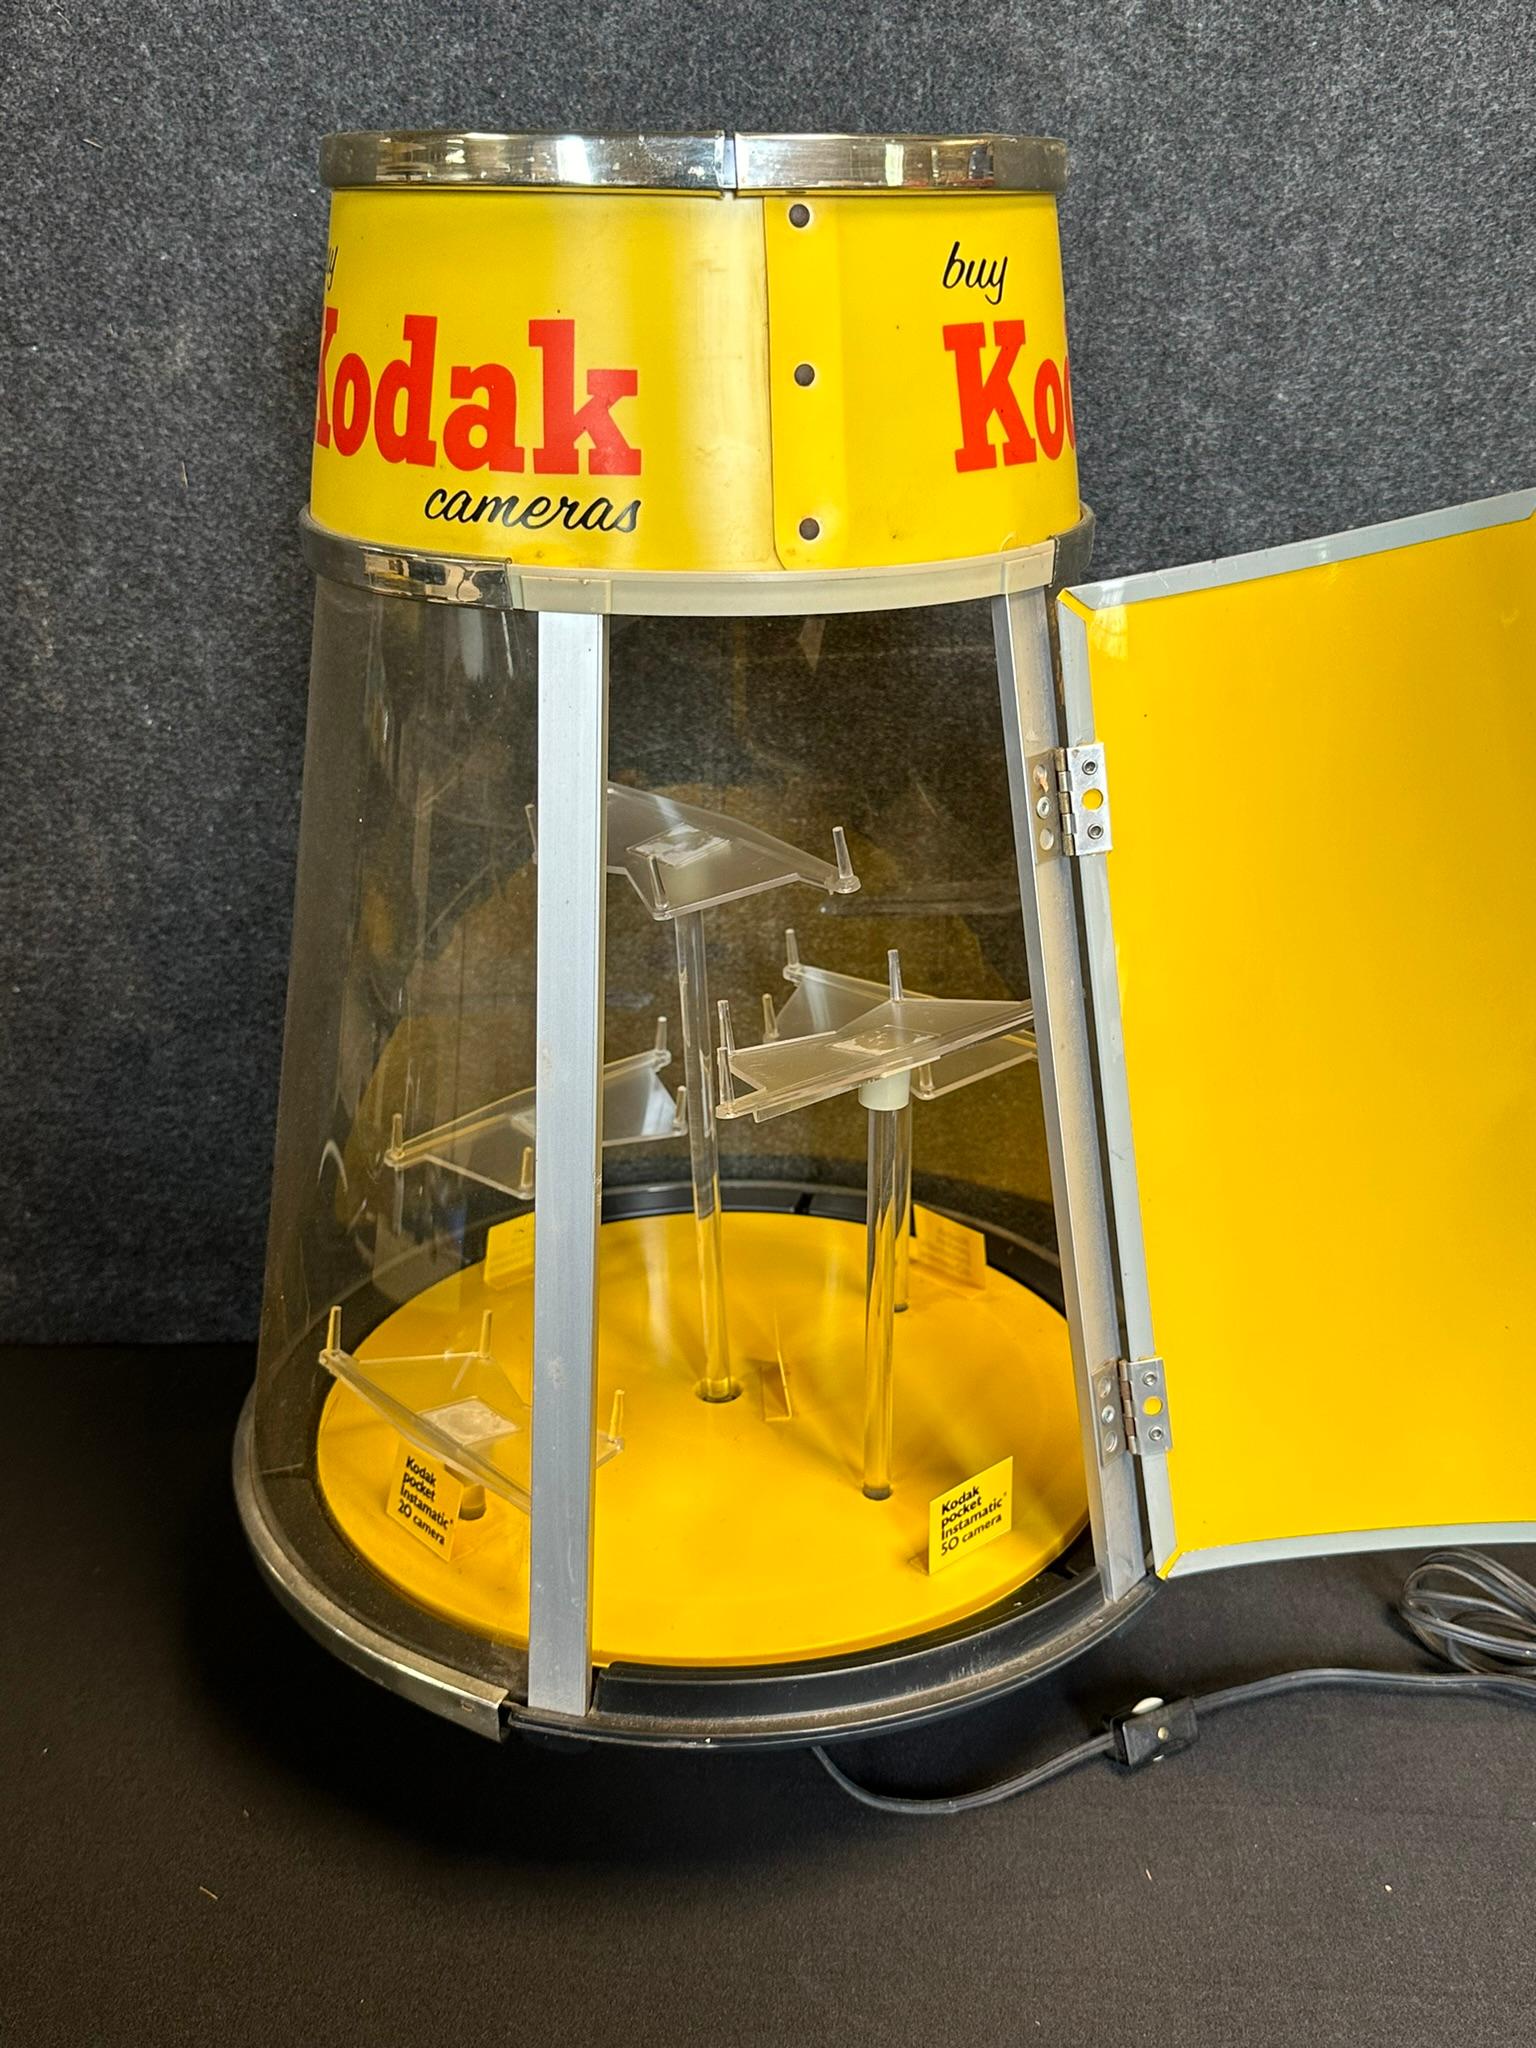 Kodak Instapocket Cameras Plastic 1960s Revolving Advertising Store Display